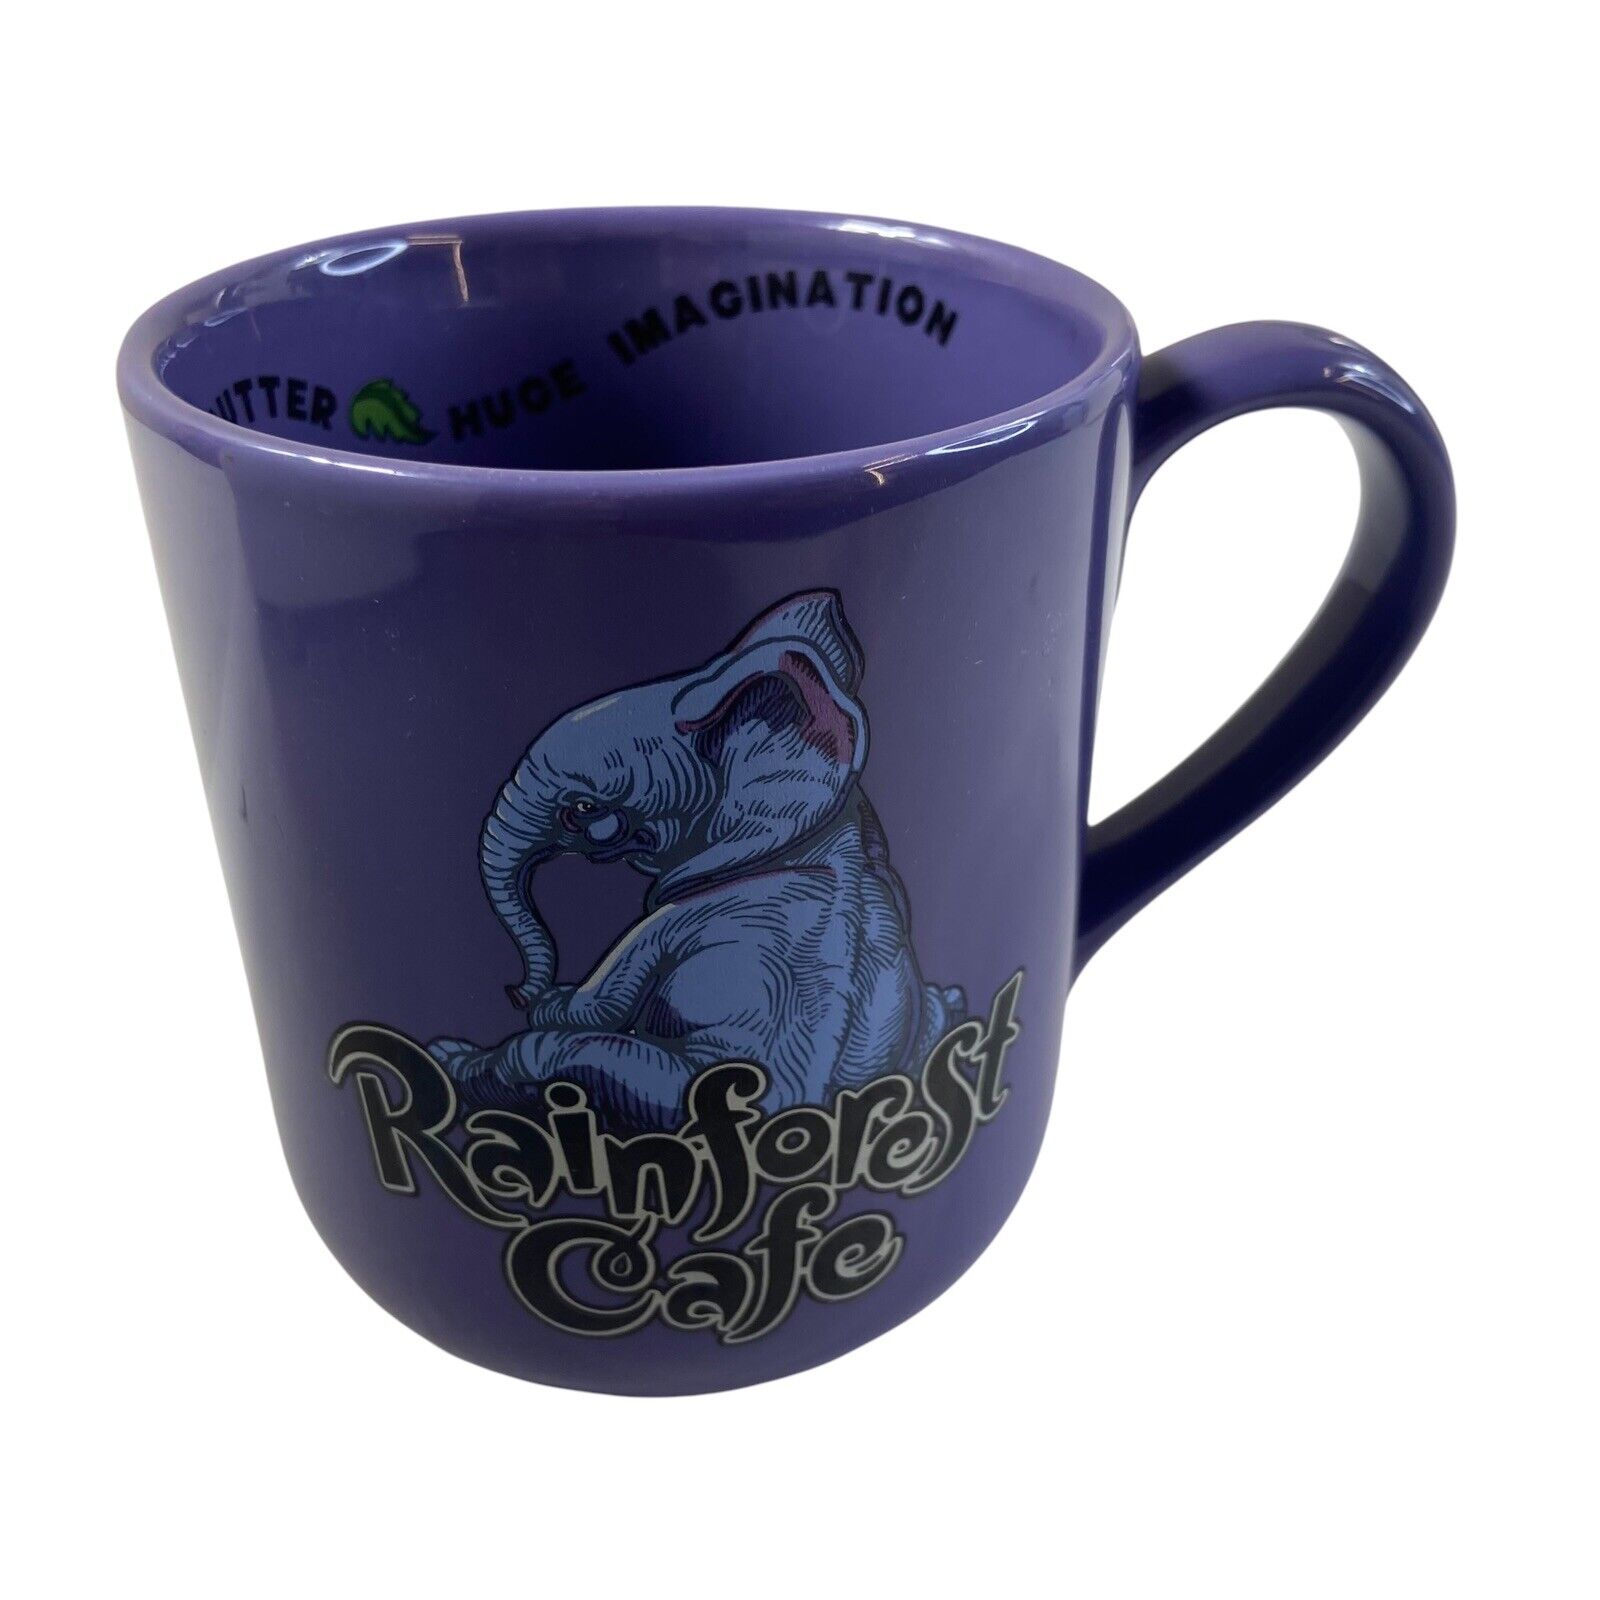 Vintage Rainforest Cafe Tuki Makeeta Elephant 2000 Large Coffee Mug Cup Purple